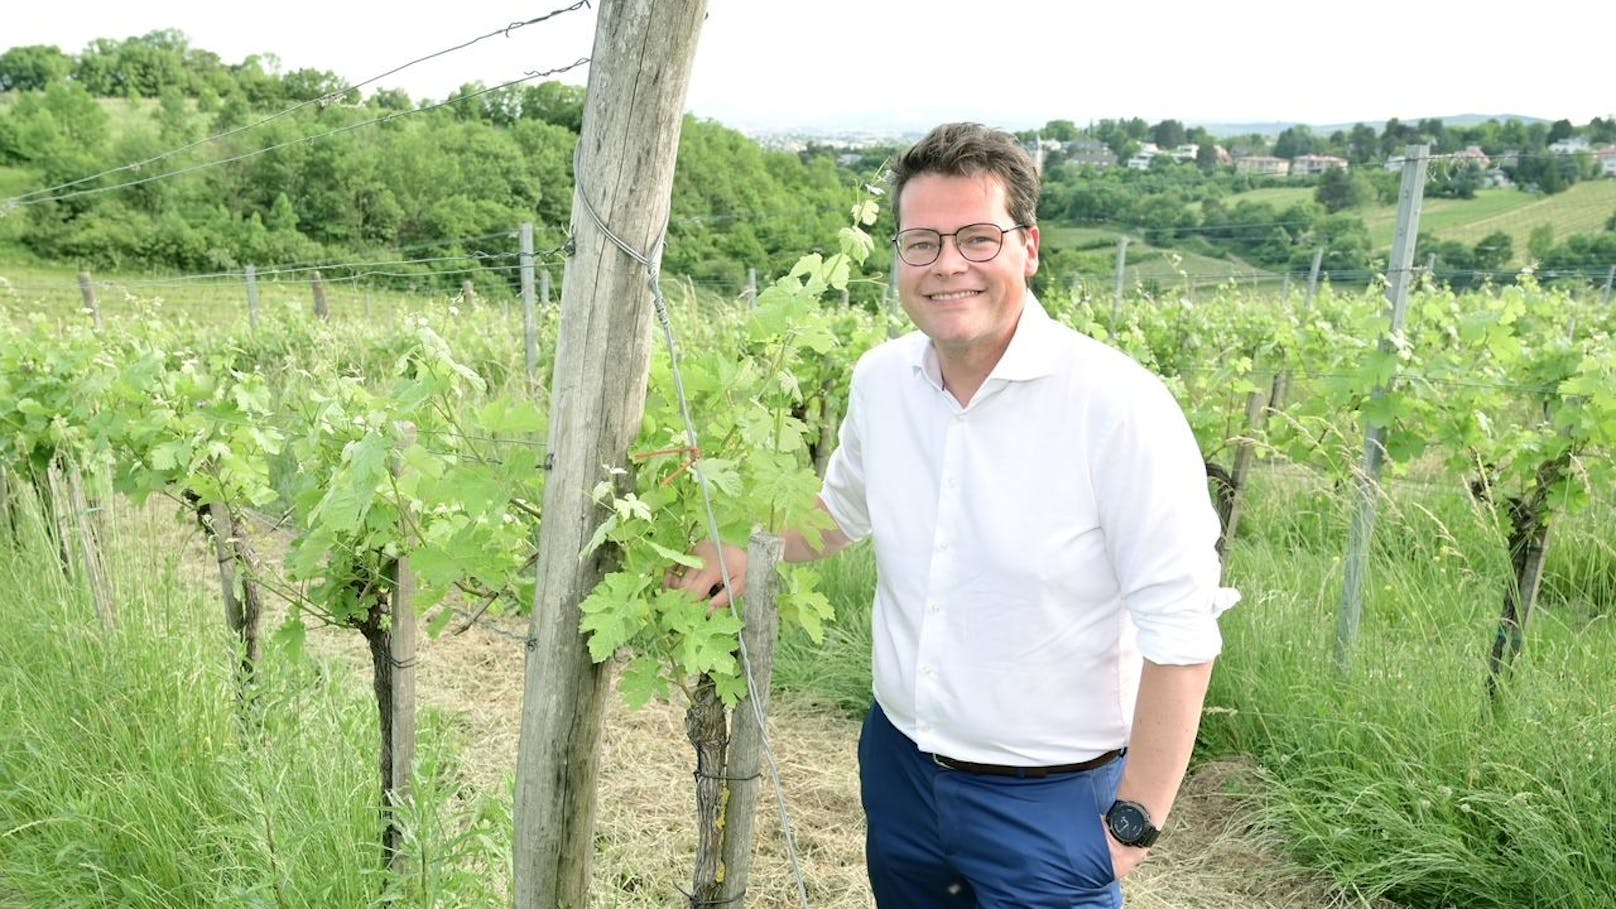 Klimastadtrat Jürgen Czernohorszky (SPÖ) lädt alle Wiener zum Weinwandertag am kommenden Wochenende.